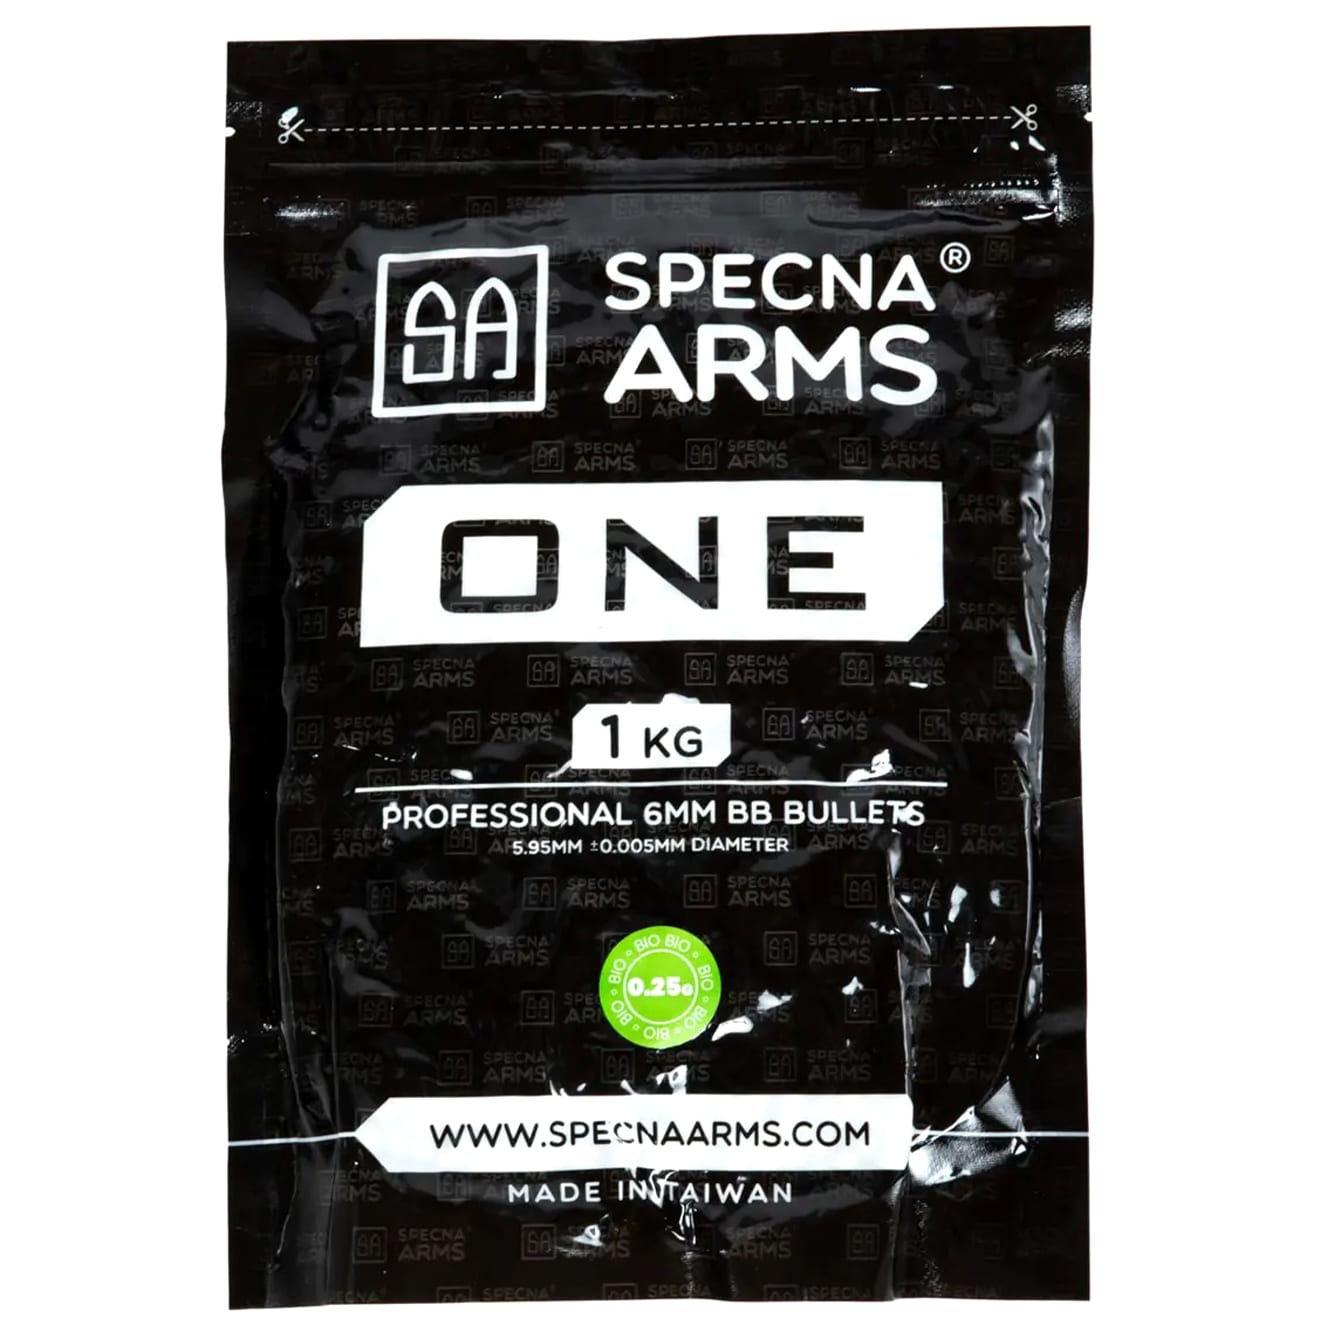 Kulki ASG biodegradowalne Specna Arms One Bio 0,25 g 1 kg - Białe